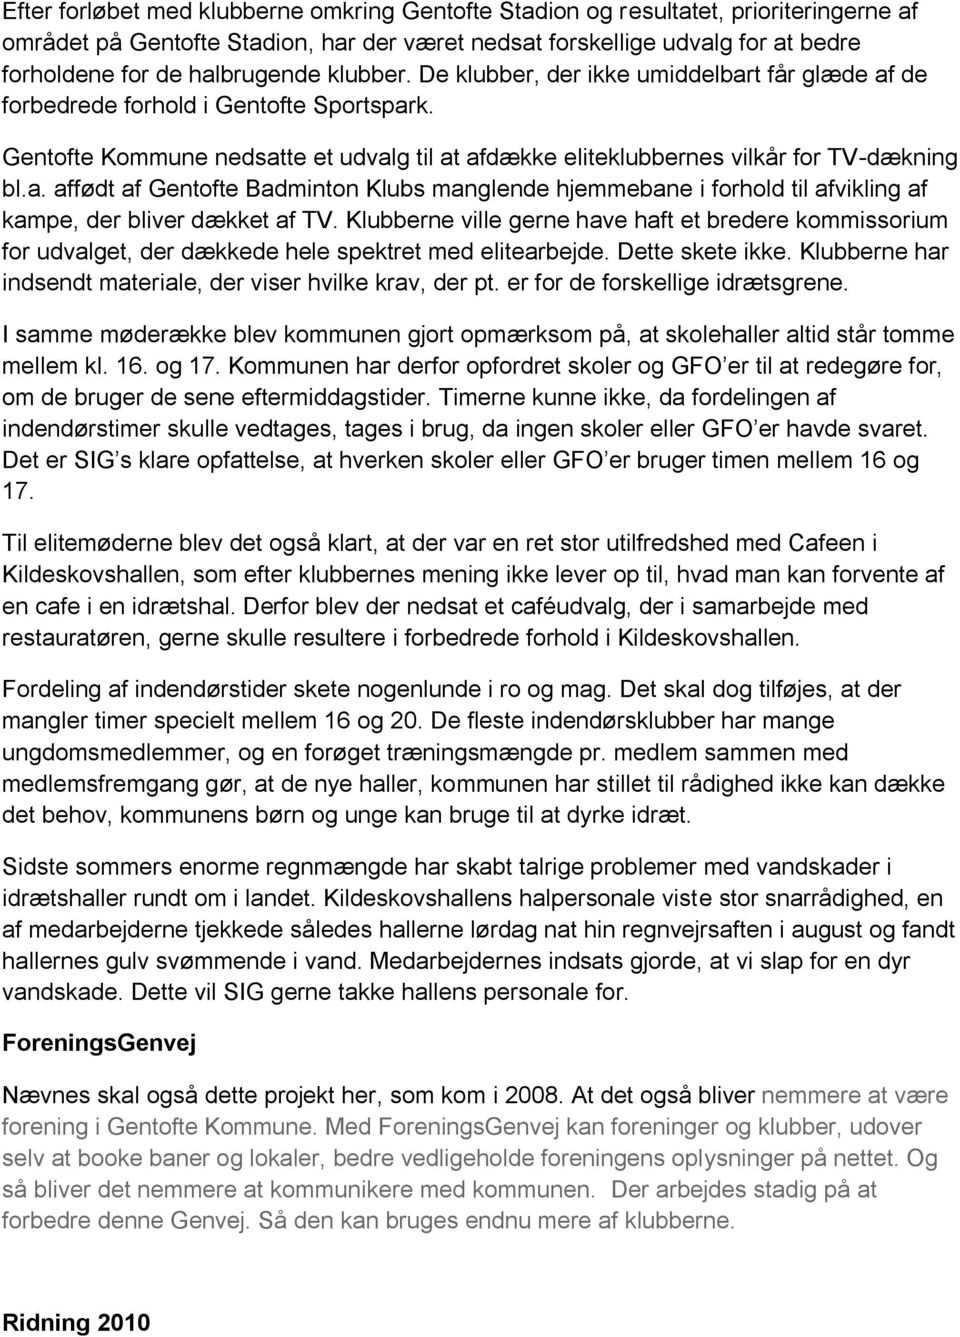 Gentofte Kommune nedsatte et udvalg til at afdække eliteklubbernes vilkår for TV-dækning bl.a. affødt af Gentofte Badminton Klubs manglende hjemmebane i forhold til afvikling af kampe, der bliver dækket af TV.